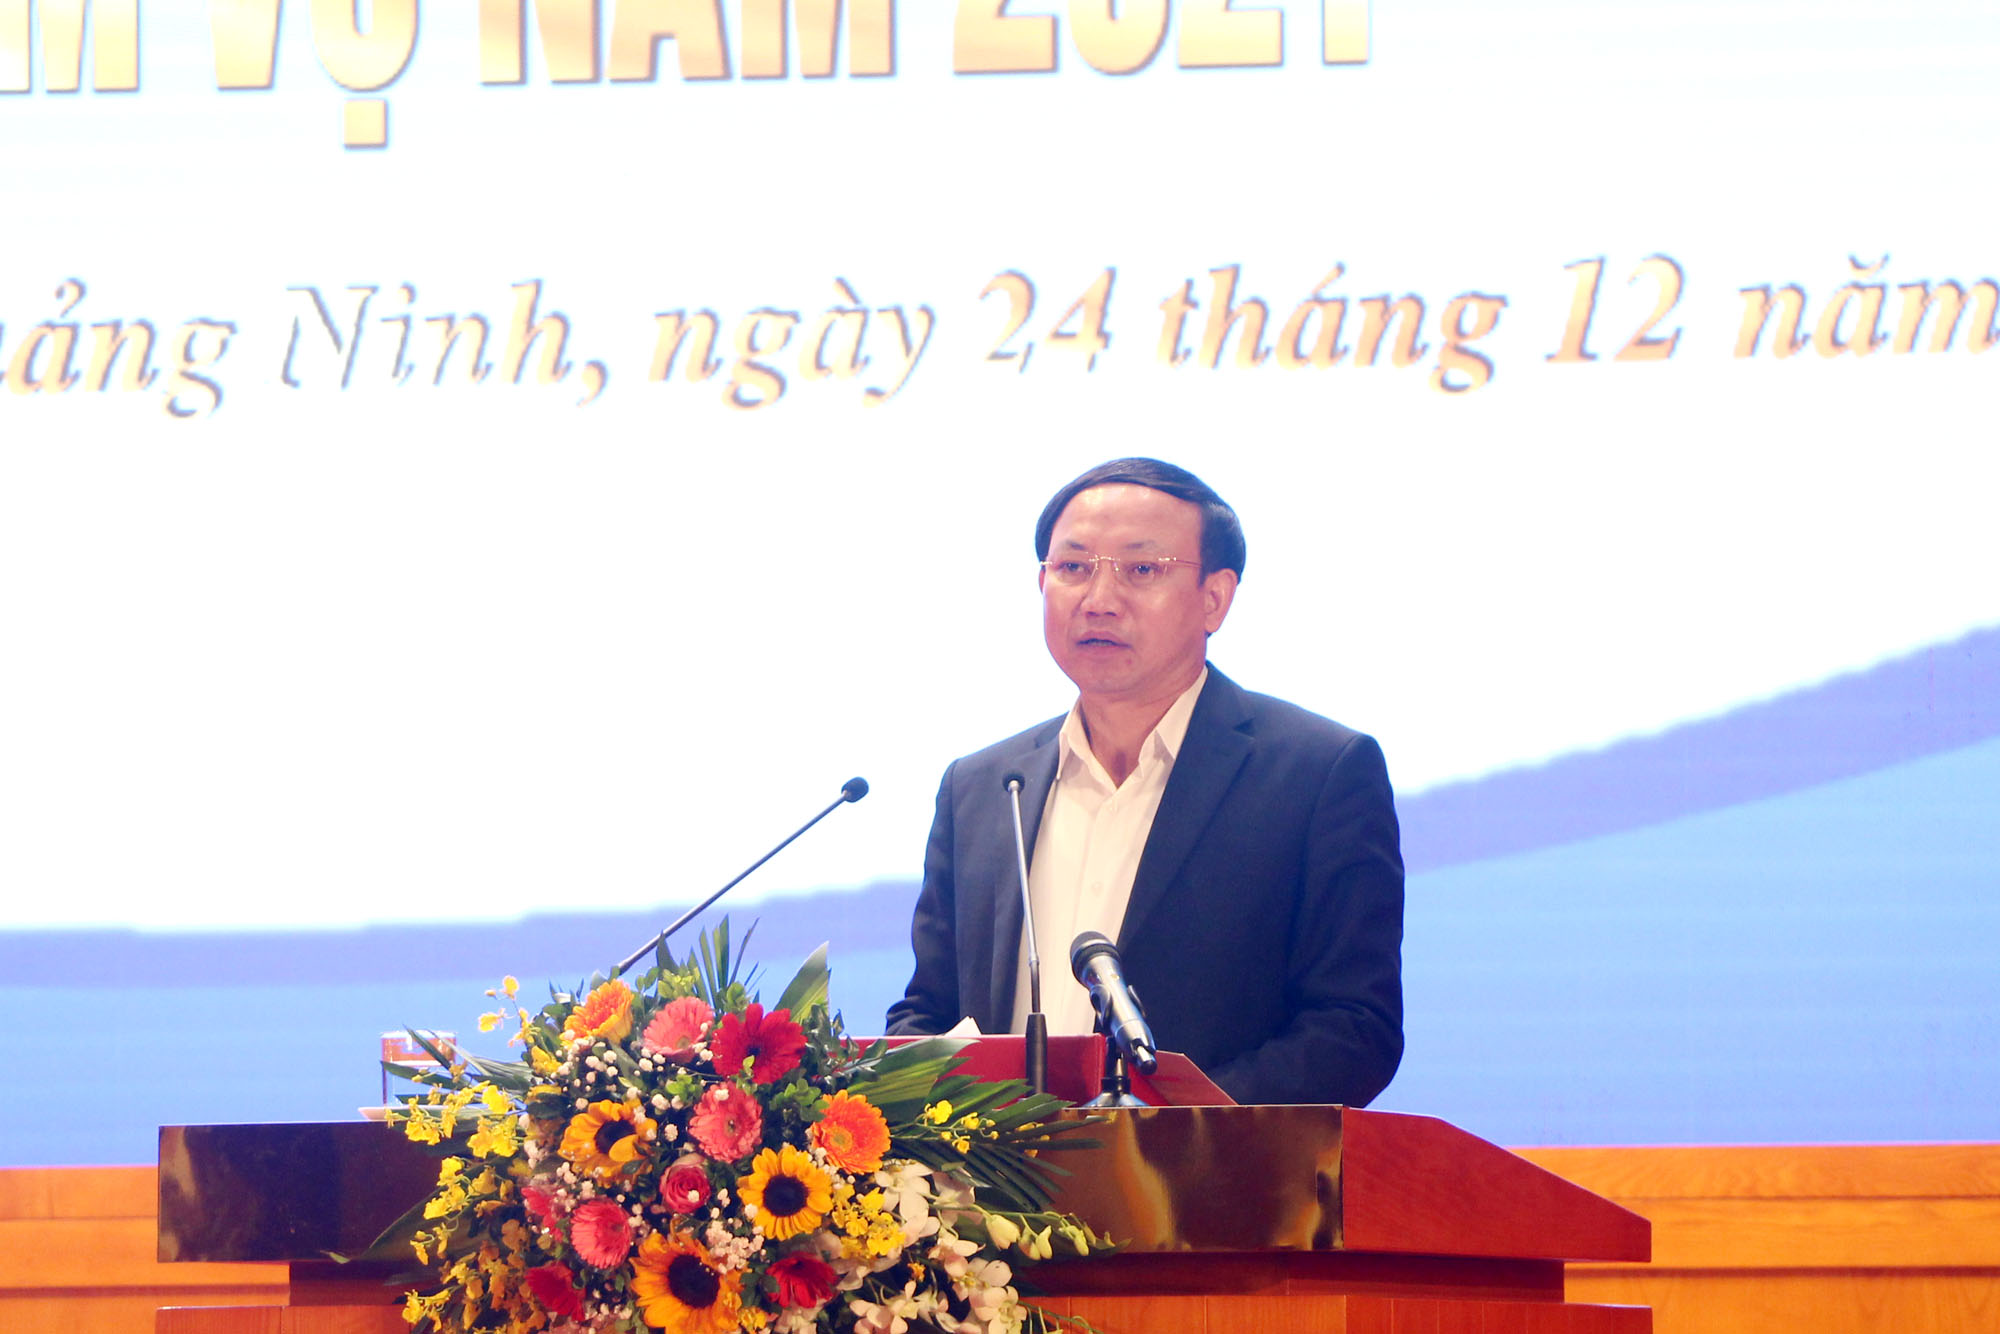 Đồng chí Nguyễn Xuân Ký, Bí thư Tỉnh ủy, Chủ tịch HĐND tỉnh, phát biểu chỉ đạo tại hội nghị.